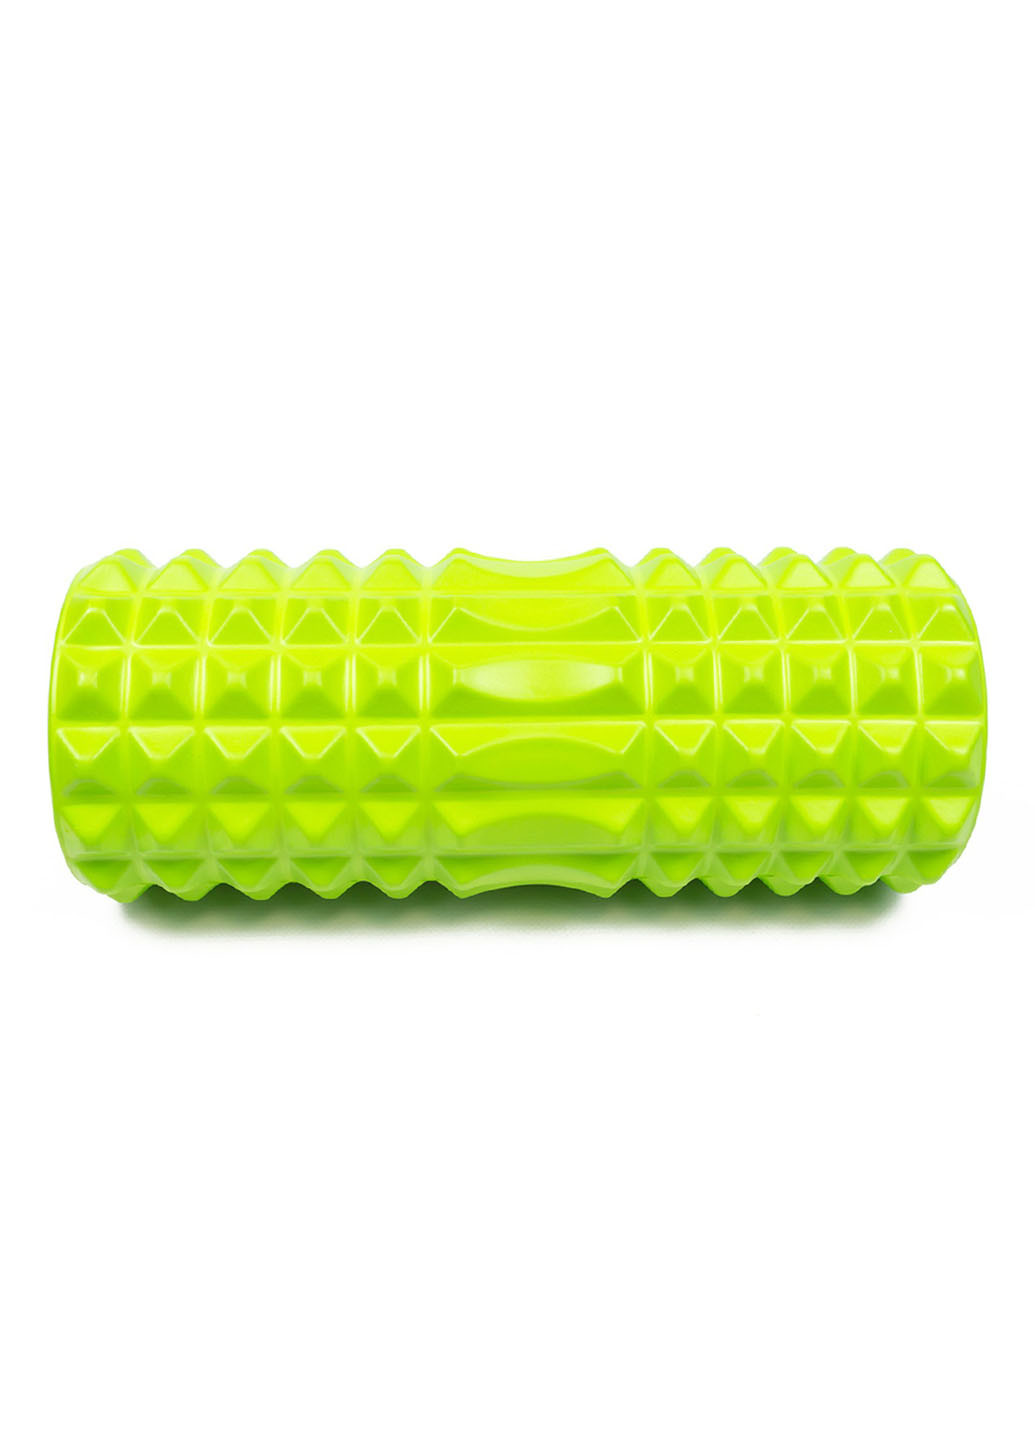 Массажный ролик Grid Roller v1.2 33 см салатовый (роллер, валик, цилиндр для йоги, пилатеса и массажа) EasyFit (237657504)